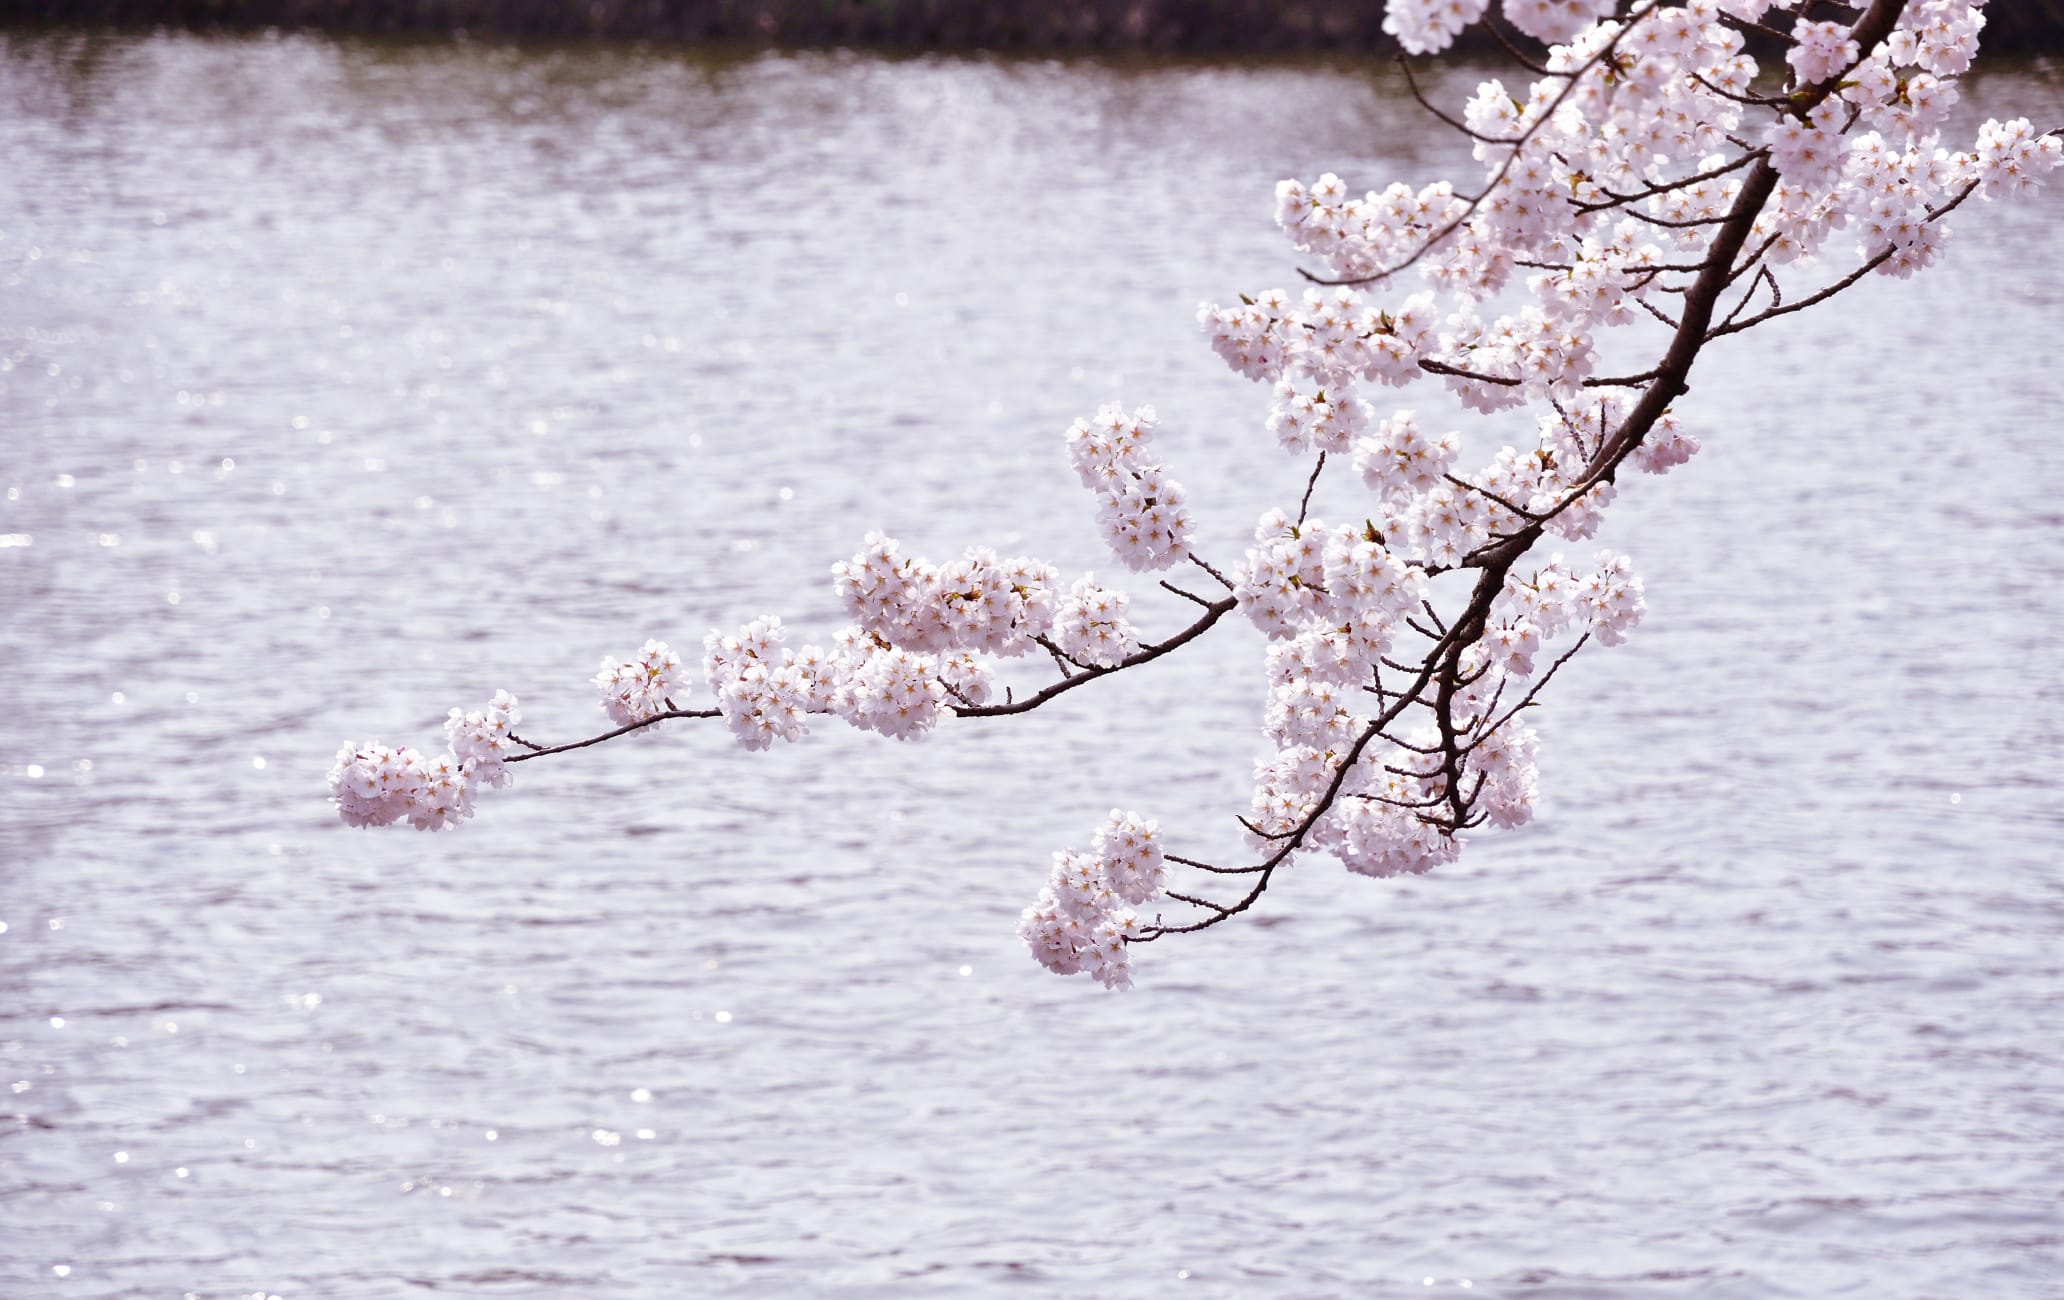 tsuruoka park-cherry blossom